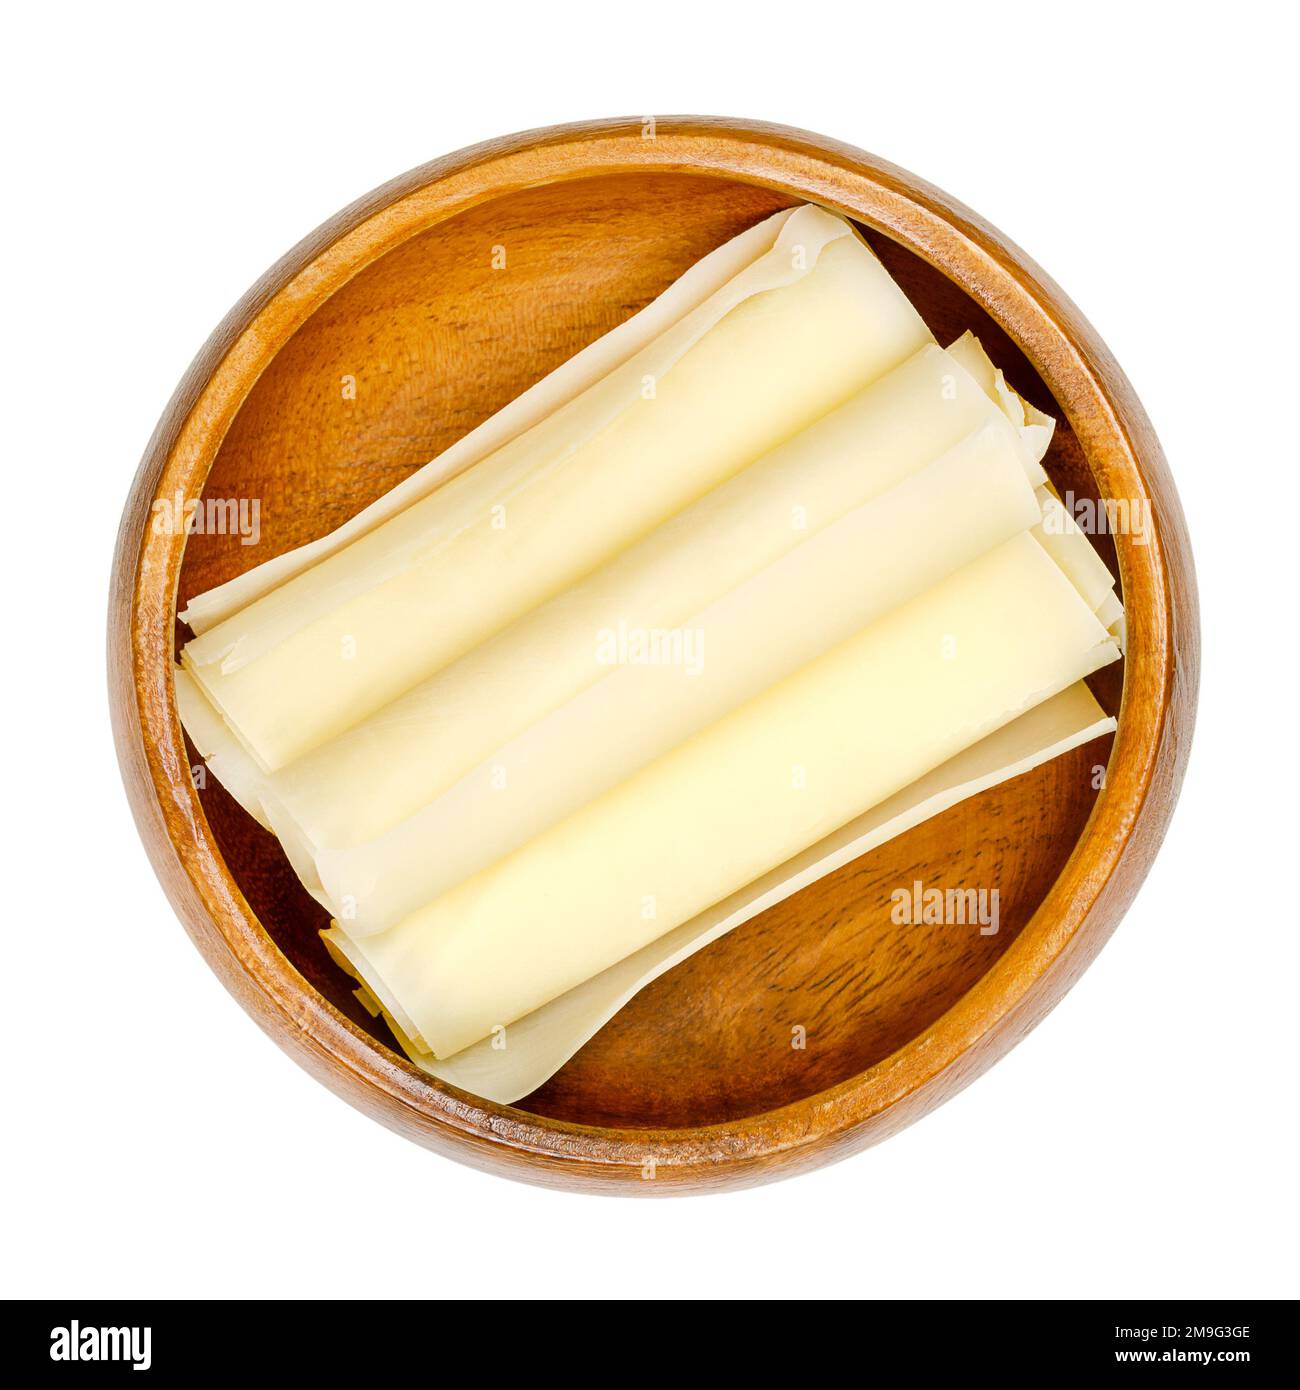 Involtini di formaggio duro svizzero, in una ciotola di legno. Tre fette sottili di Sbrinz, formaggio pieno extra duro, prodotto nella Svizzera centrale. Foto Stock